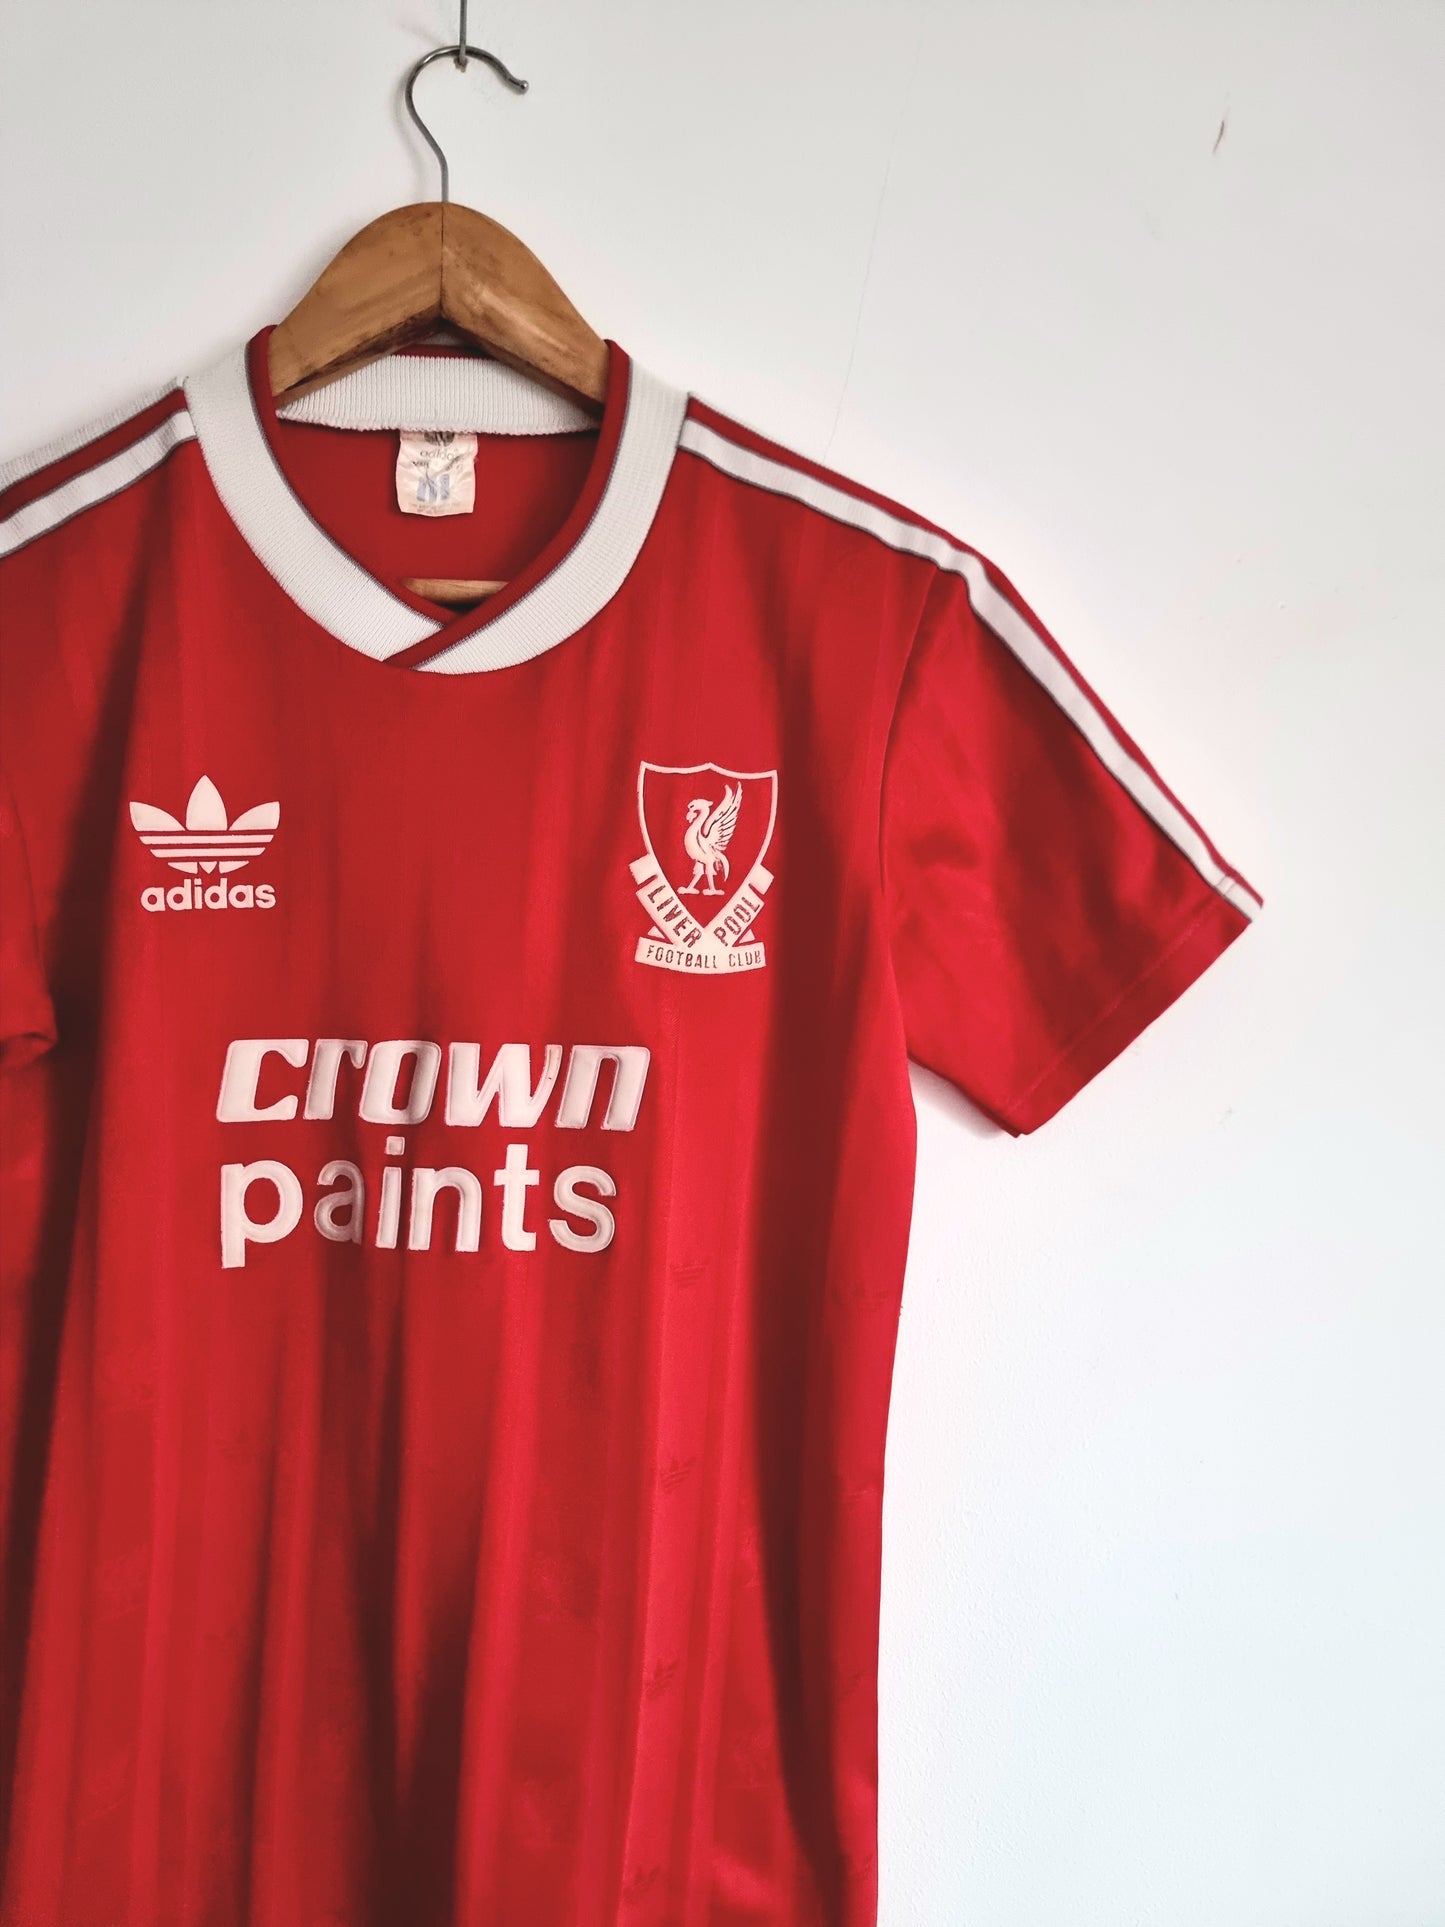 Adidas Liverpool 87/88 Home Shirt Small